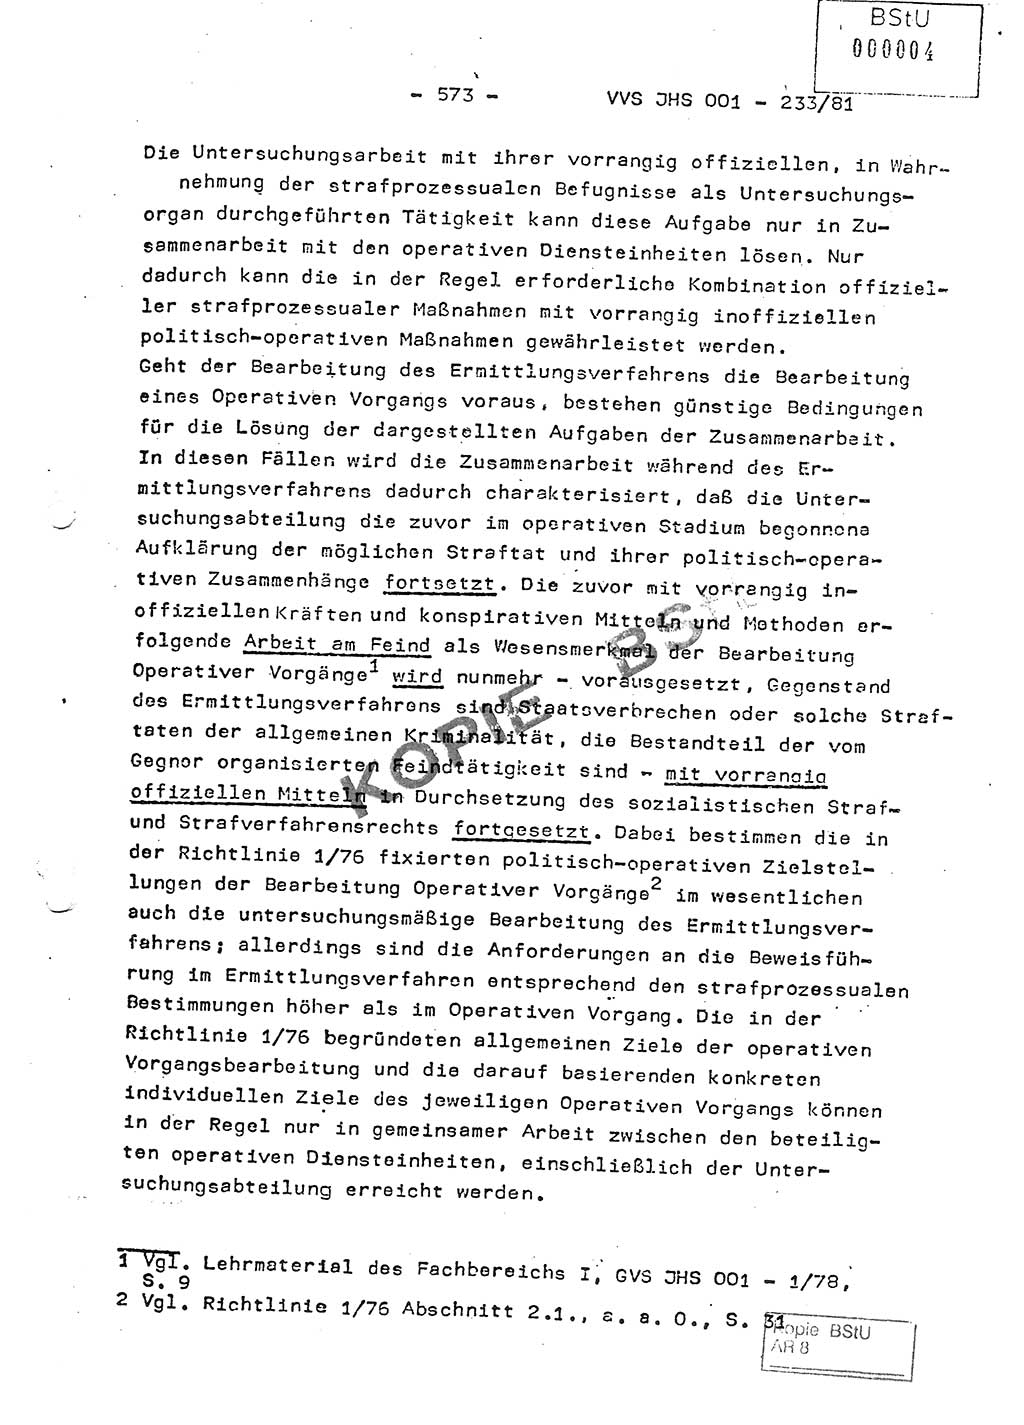 Dissertation Oberstleutnant Horst Zank (JHS), Oberstleutnant Dr. Karl-Heinz Knoblauch (JHS), Oberstleutnant Gustav-Adolf Kowalewski (HA Ⅸ), Oberstleutnant Wolfgang Plötner (HA Ⅸ), Ministerium für Staatssicherheit (MfS) [Deutsche Demokratische Republik (DDR)], Juristische Hochschule (JHS), Vertrauliche Verschlußsache (VVS) o001-233/81, Potsdam 1981, Blatt 573 (Diss. MfS DDR JHS VVS o001-233/81 1981, Bl. 573)